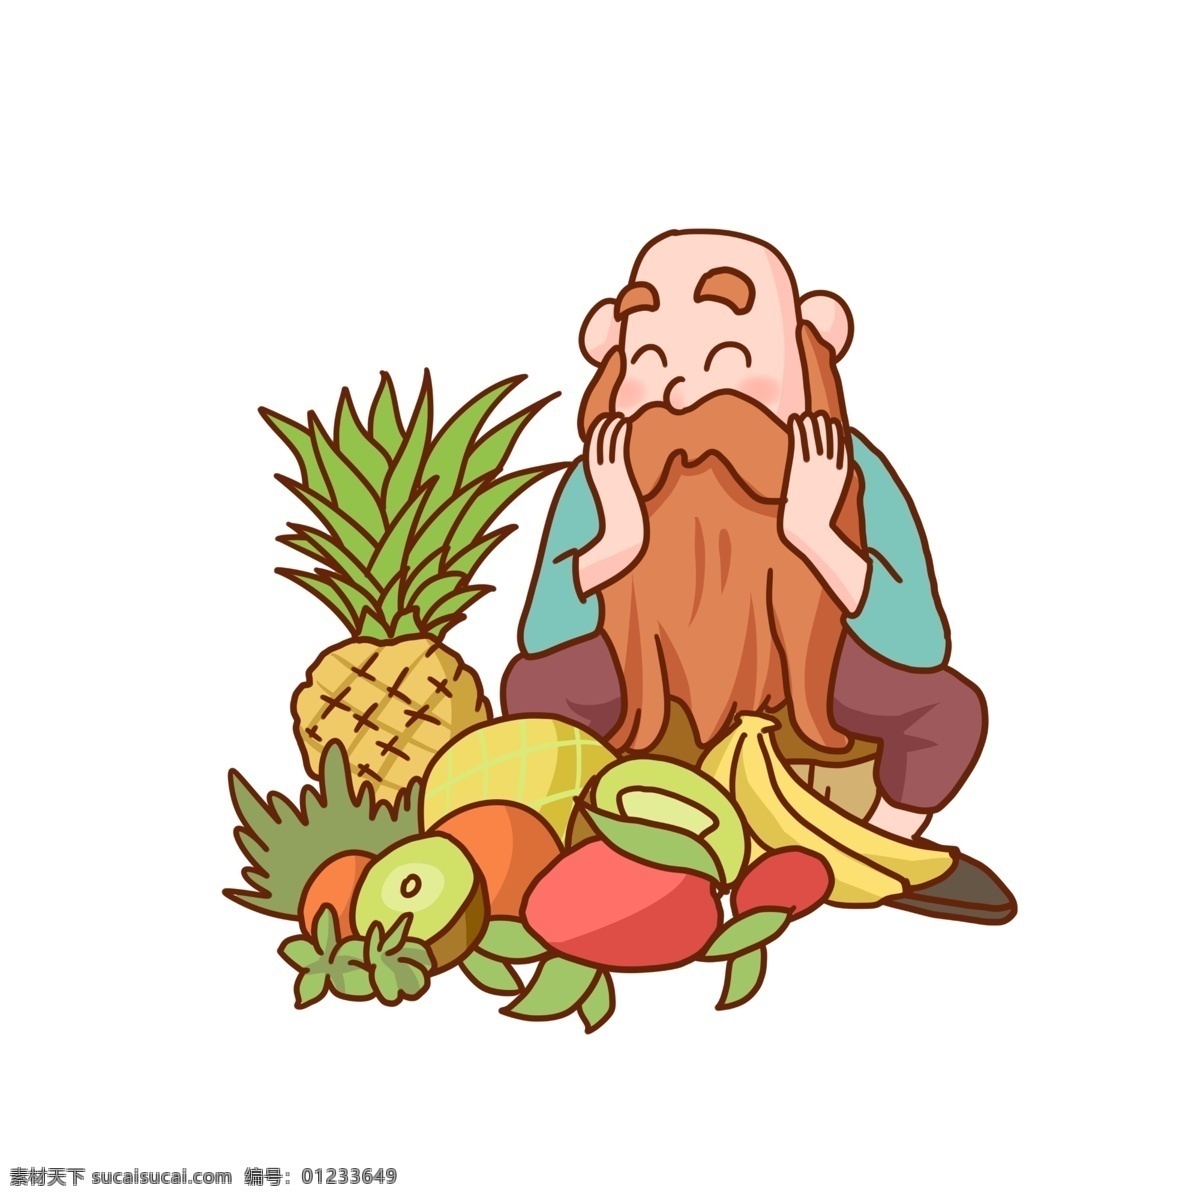 丰收 农民 瓜果 手 绘图 老爷爷 卡通人物 菠萝 香蕉 猕猴桃 奇异果 水果 手绘图 胡子